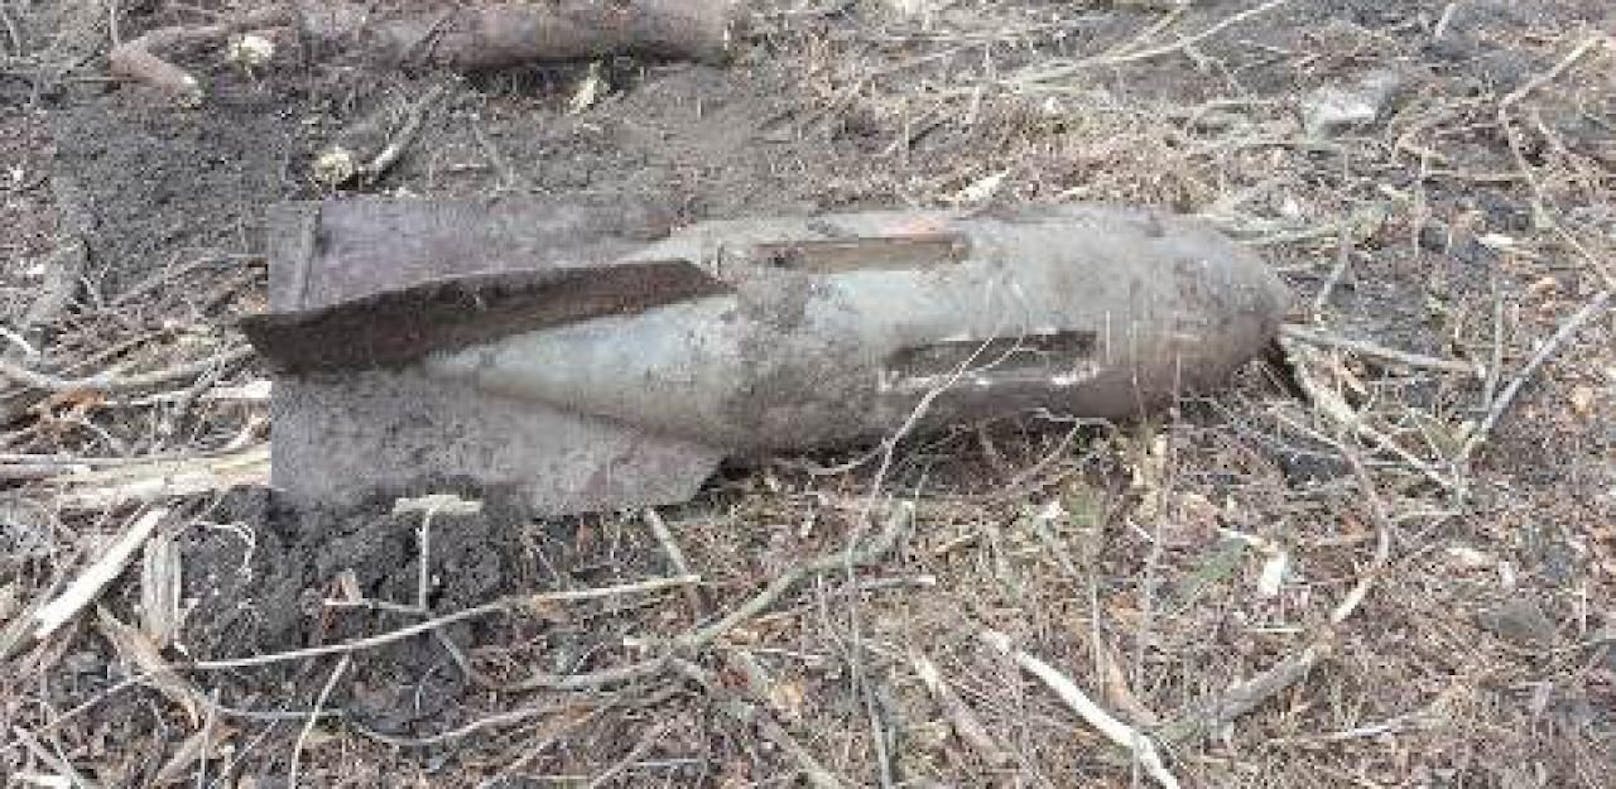 In einem Wald in Garsten wurde eine Fliegerbombe entdeckt.